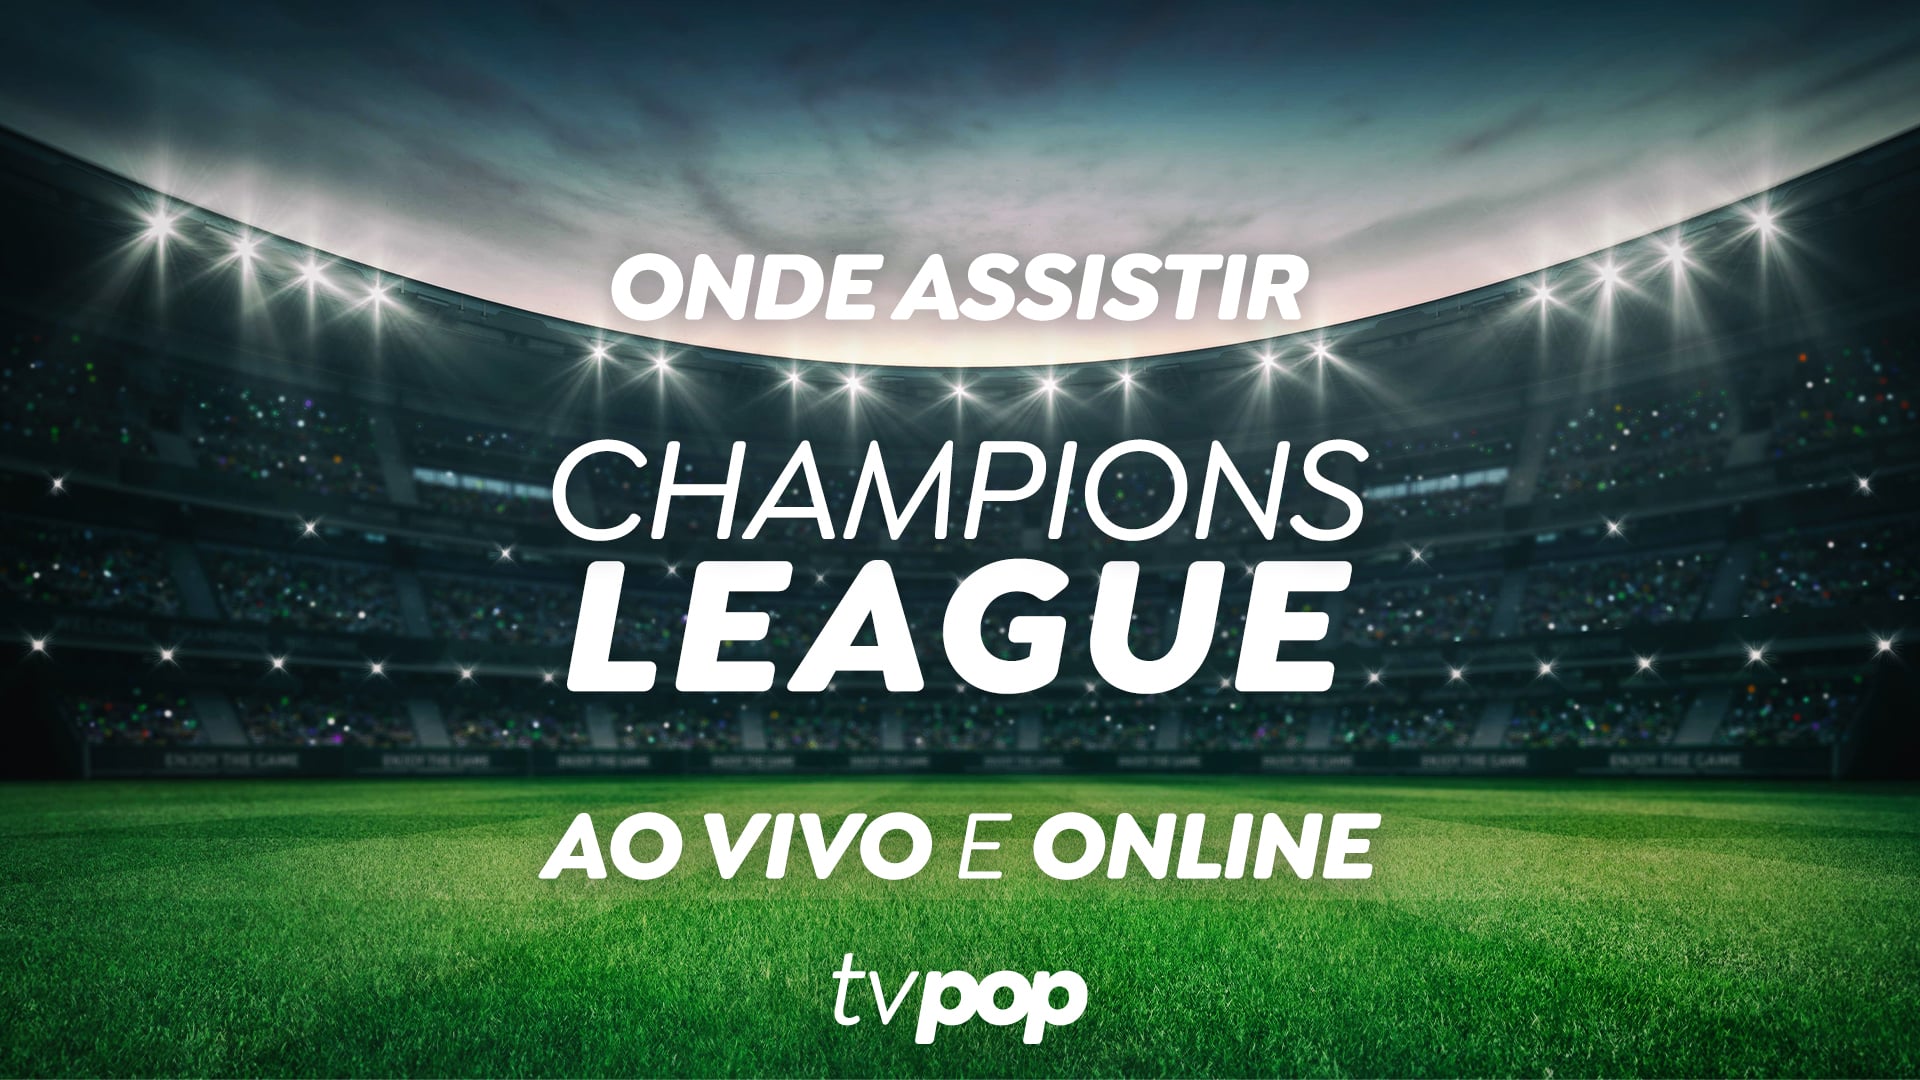 Saiba como assistir aos jogos da Champions League ao vivo no Facebook -  Canaltech